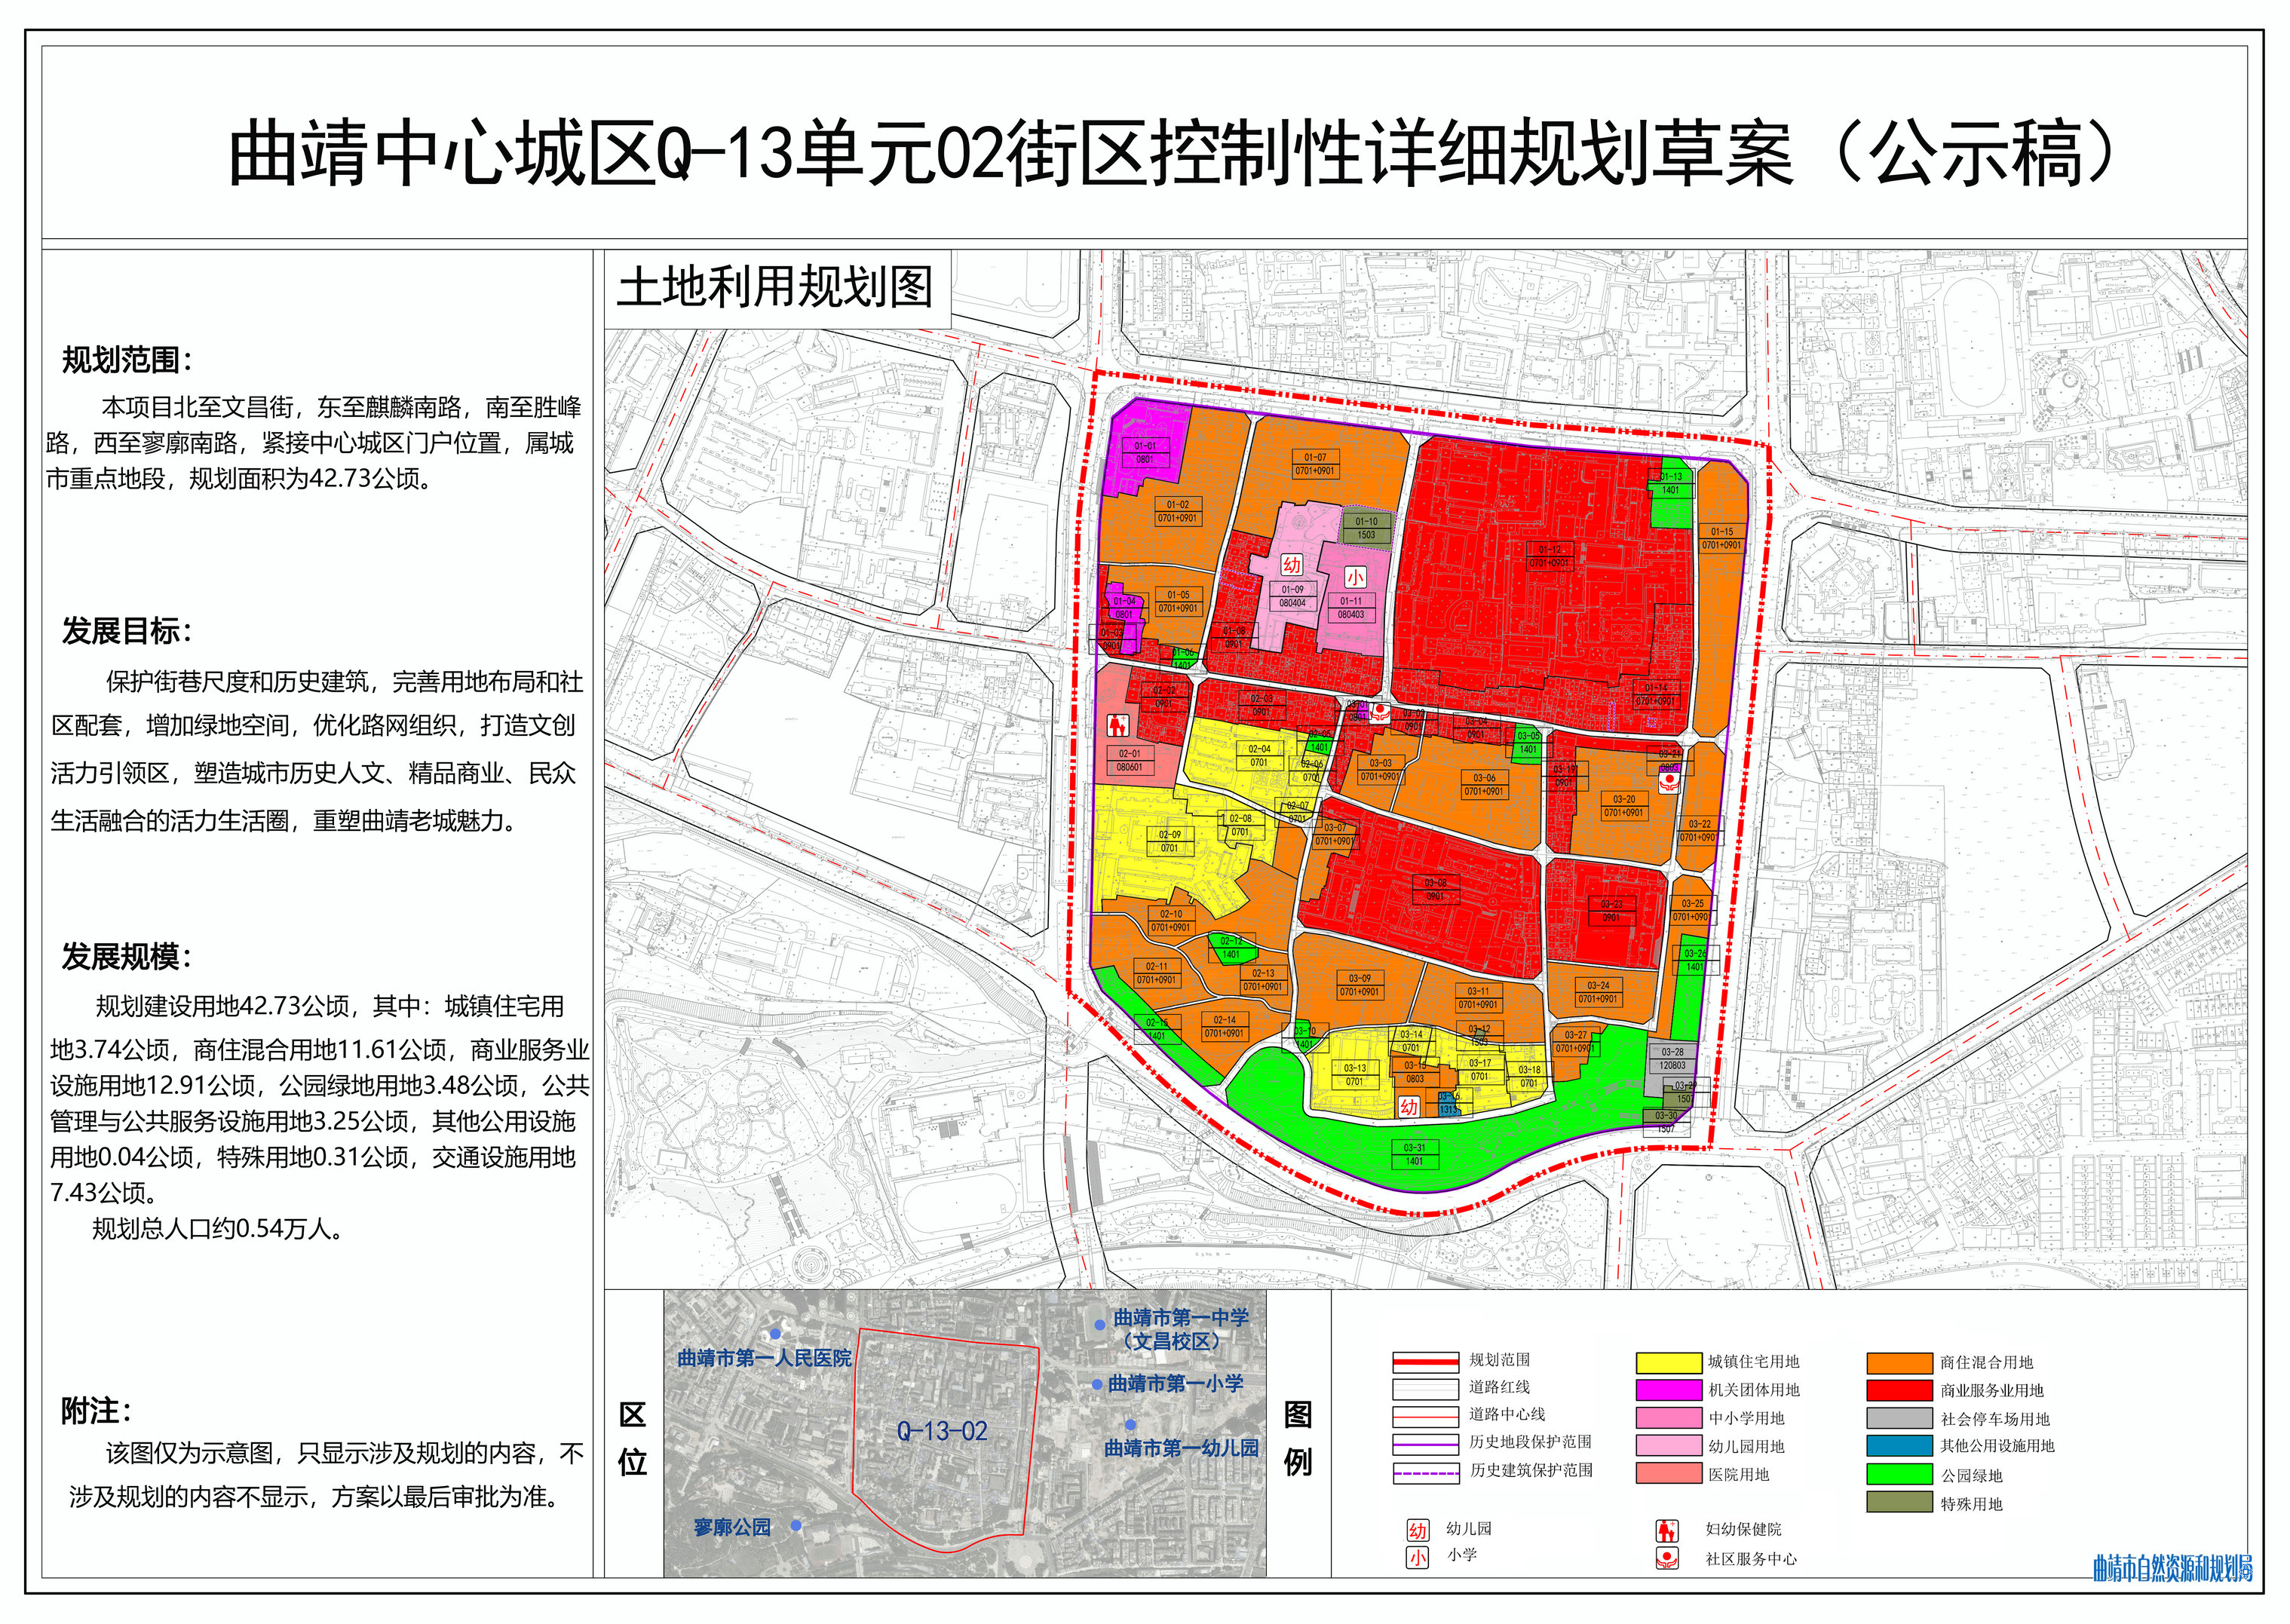 曲靖中心城区西门街片区控制性详细规划草案公示